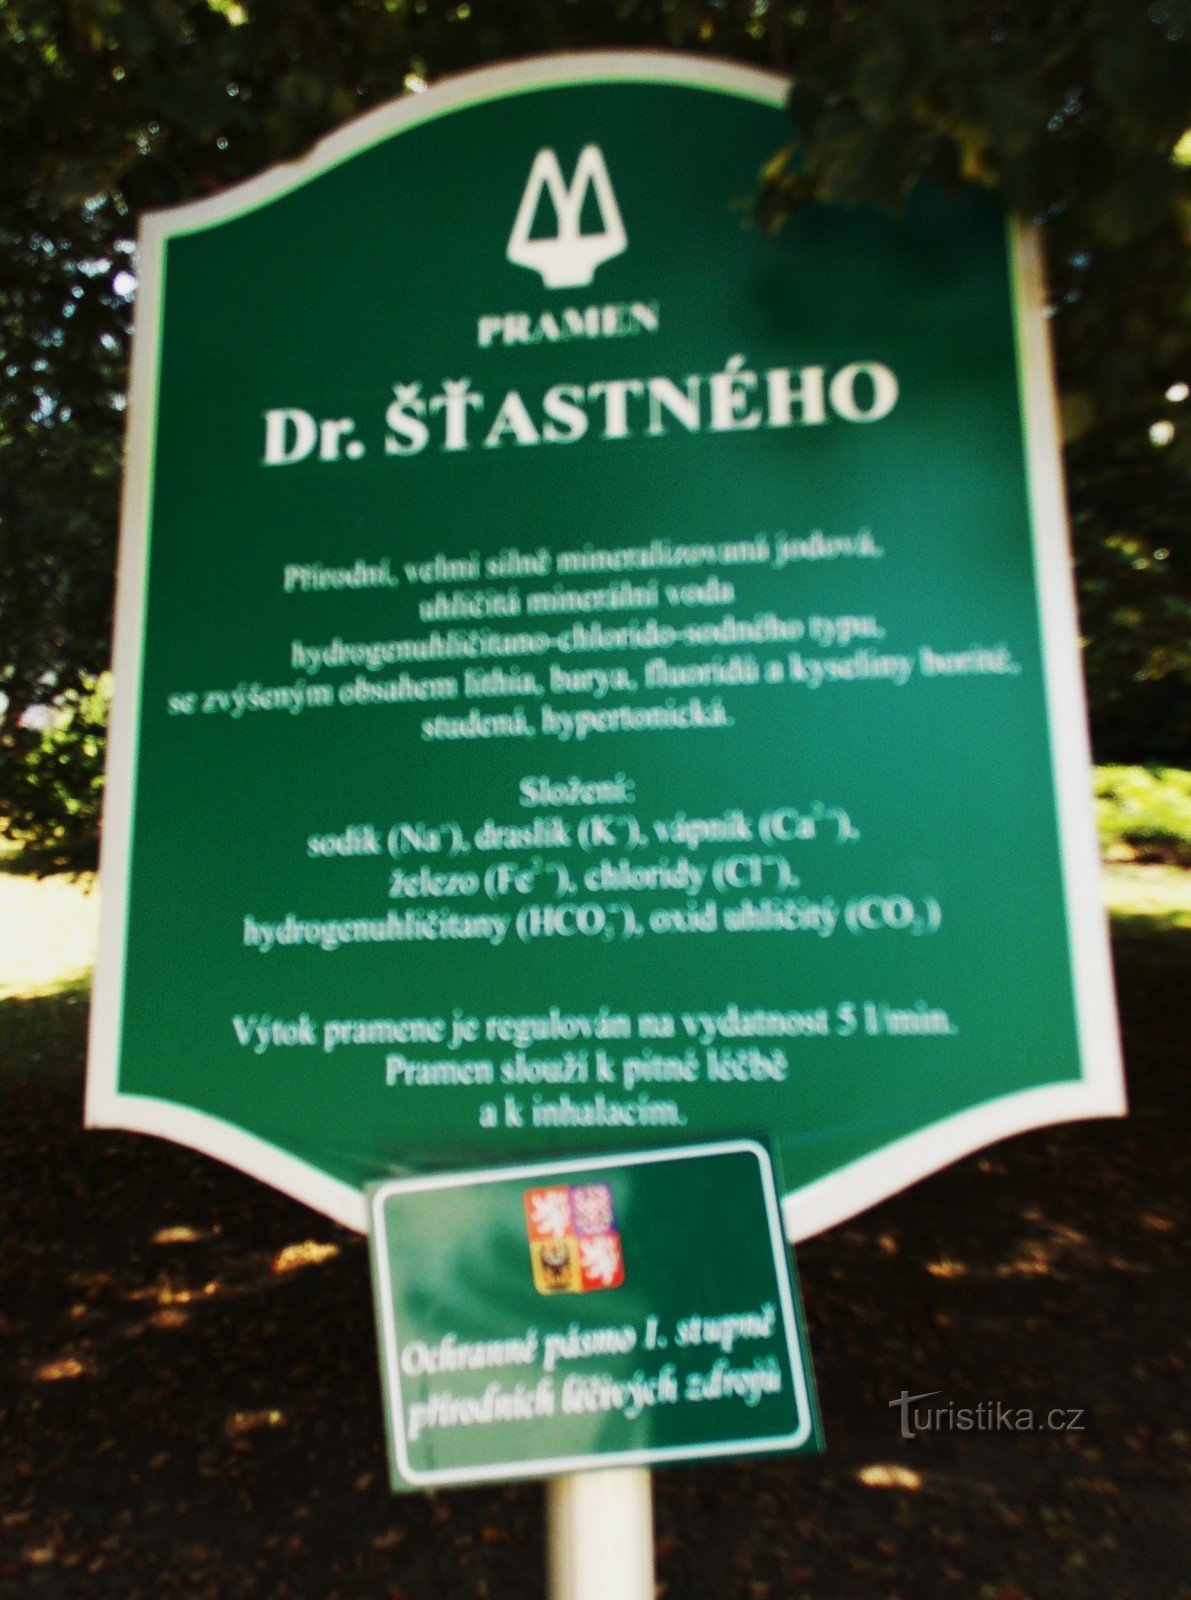 Στην πηγή Dr. Šťastneho στο Luhačovice